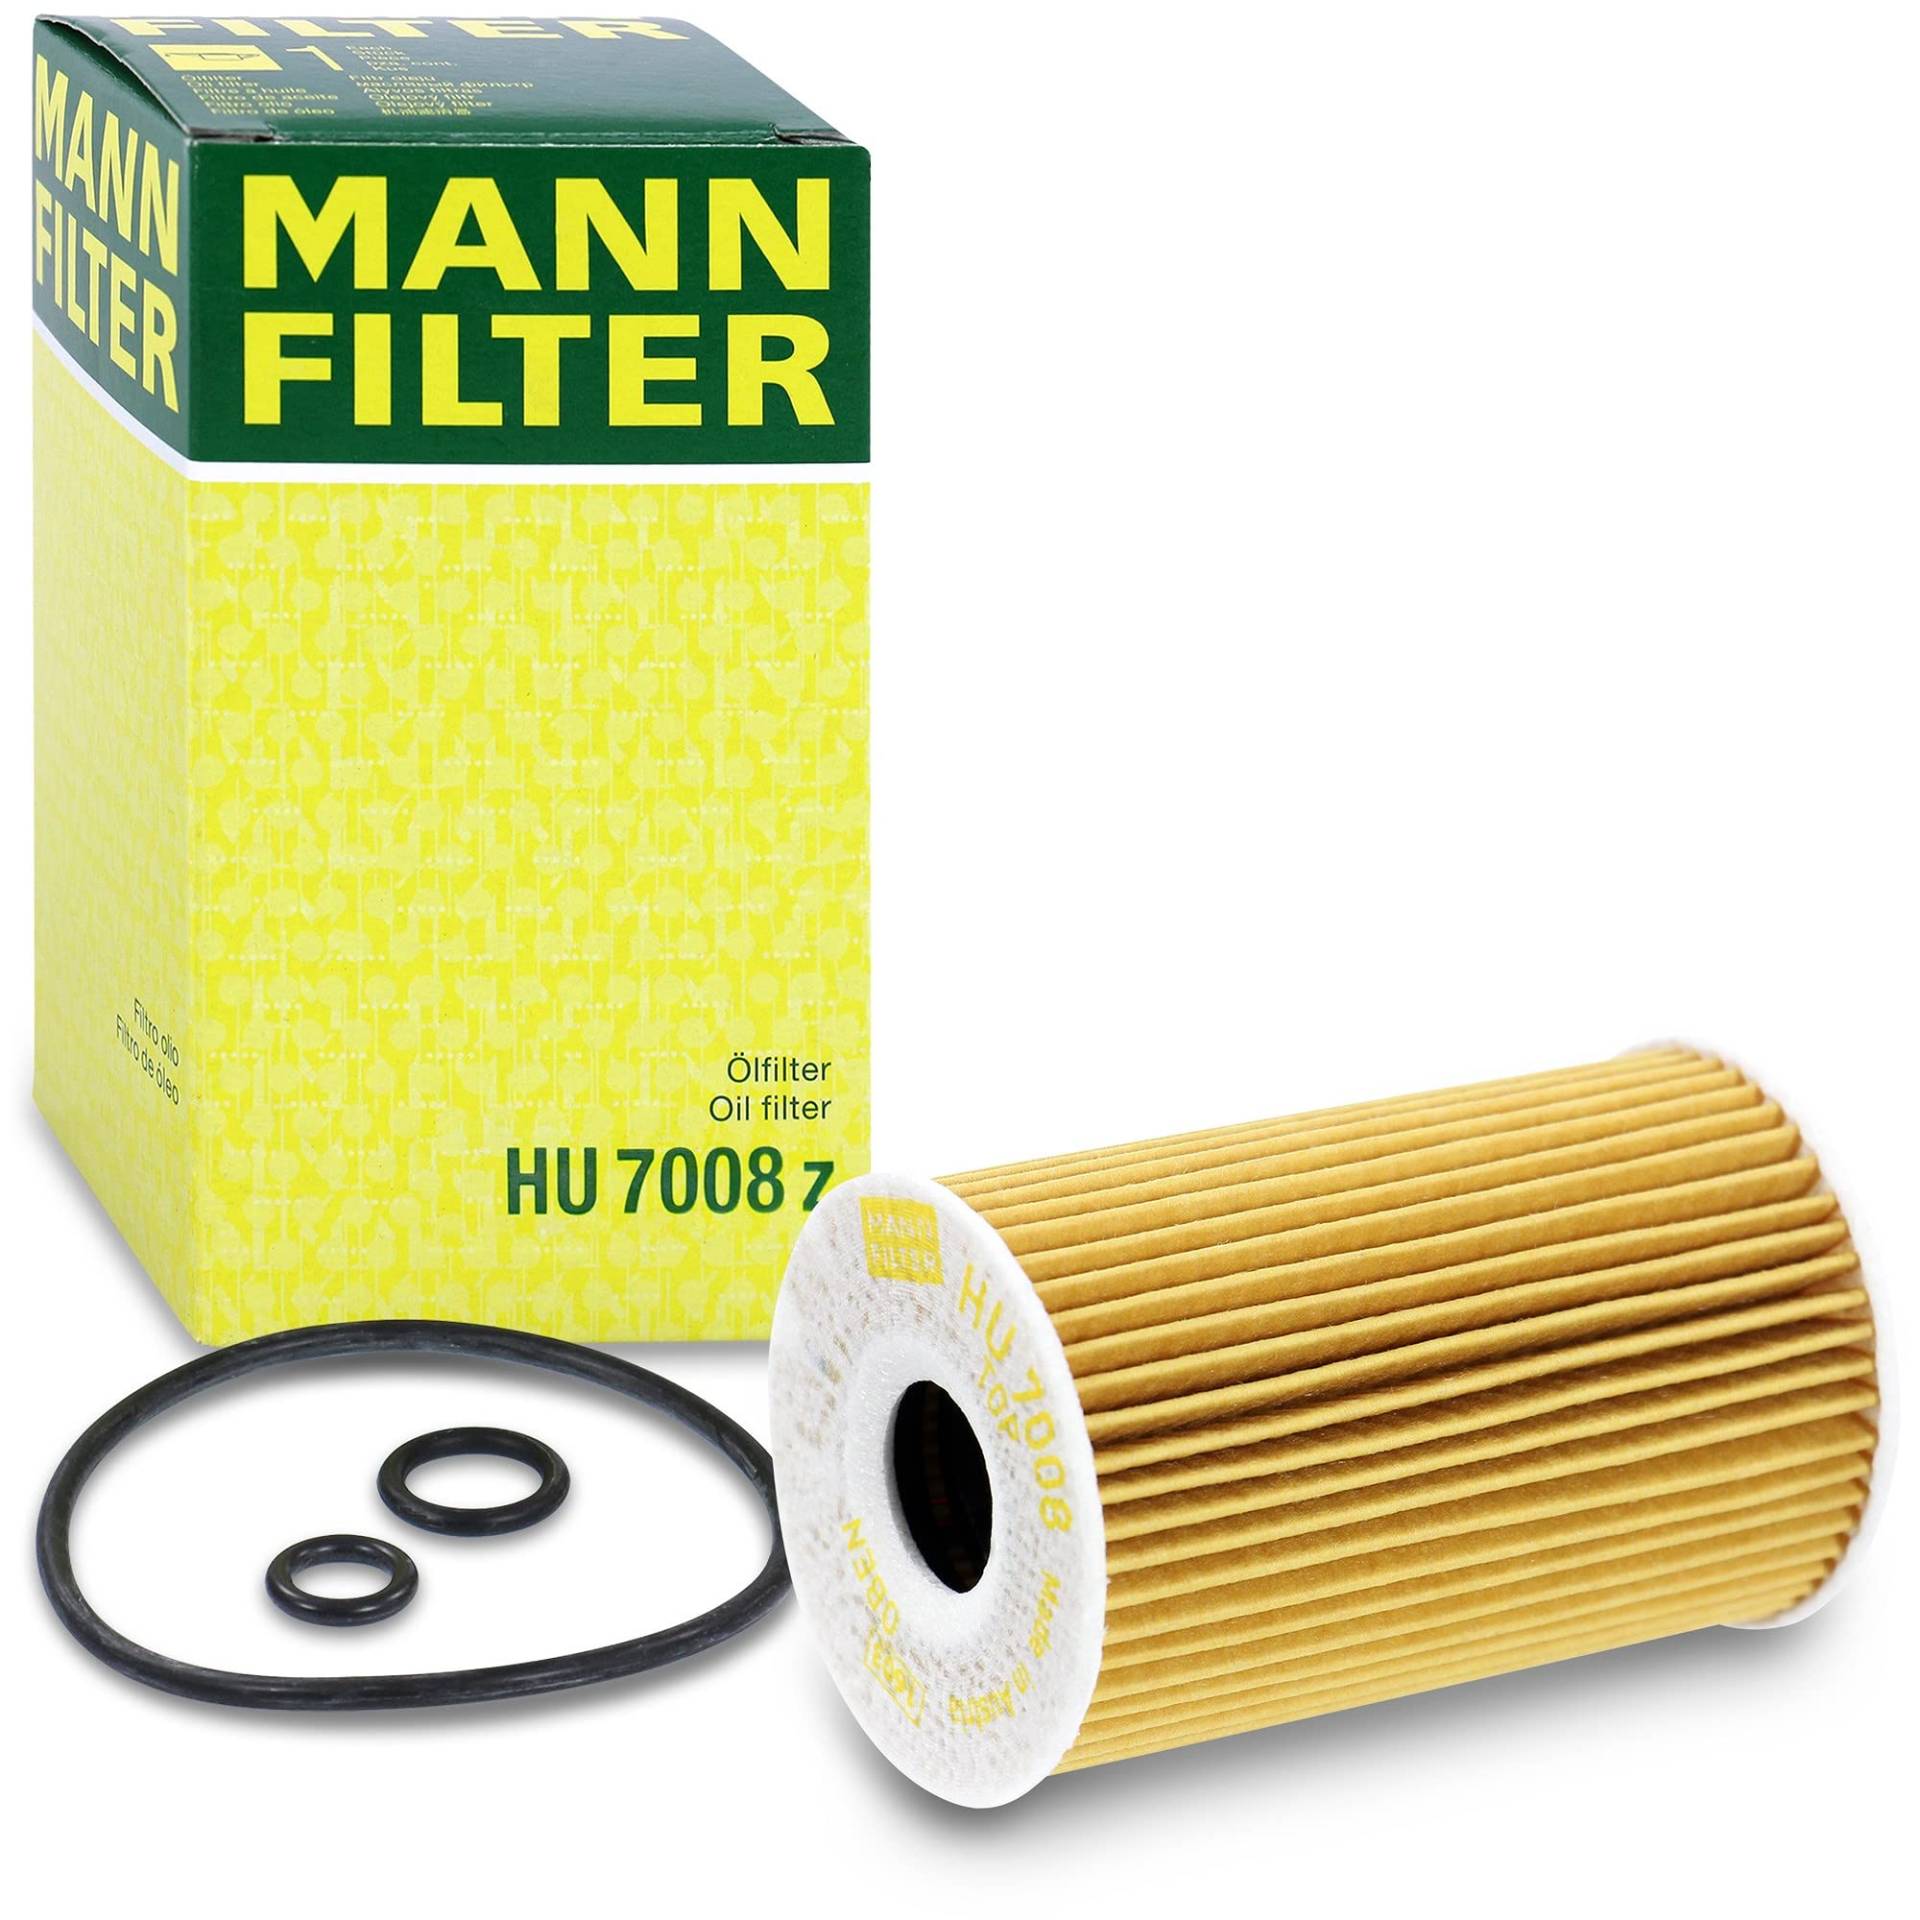 MANN-FILTER HU 7008 Z Ölfilter – Ölfilter Satz mit Dichtung / Dichtungssatz – Für PKW von MANN-FILTER